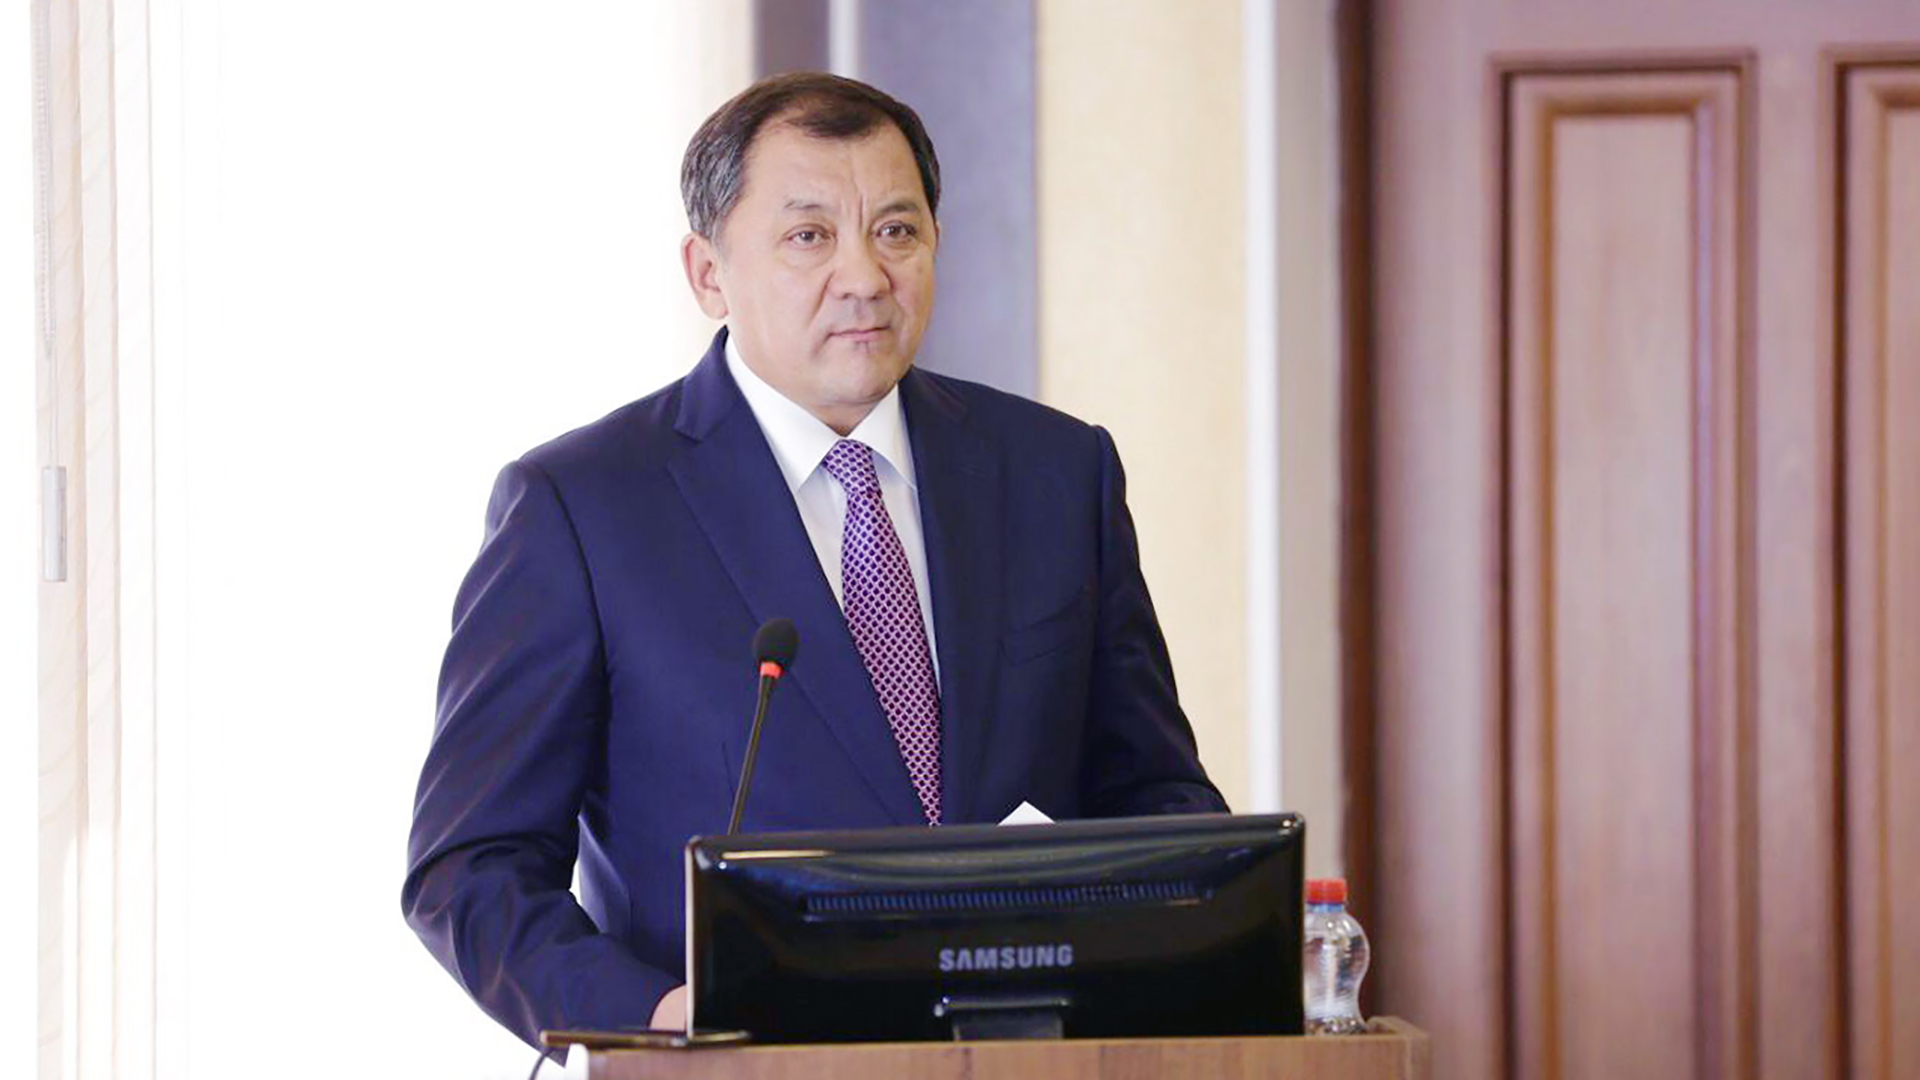 Н.Ноғаев: Қазақстанның ішкі нарығы өзімізде өндірілген мұнай өнімдерімен толық қамтылған